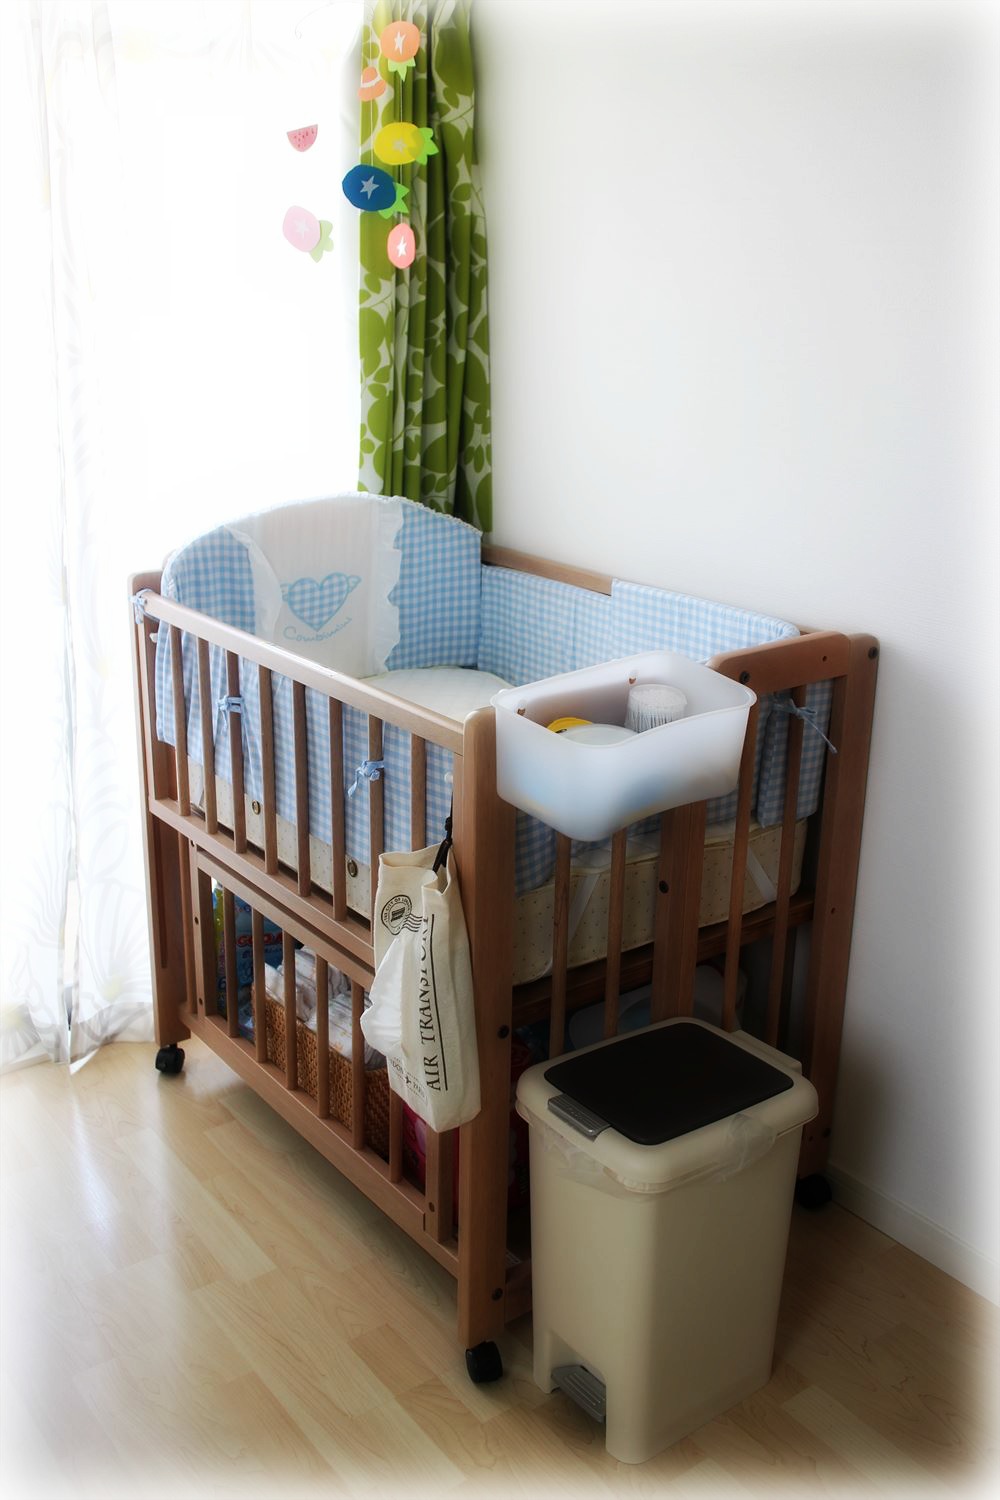 超特価コーナー ベビー☺️ベビーベッド☺️赤ちゃんの寝具❤ベット❤使いやすい✨収納便利❤ 布団/毛布